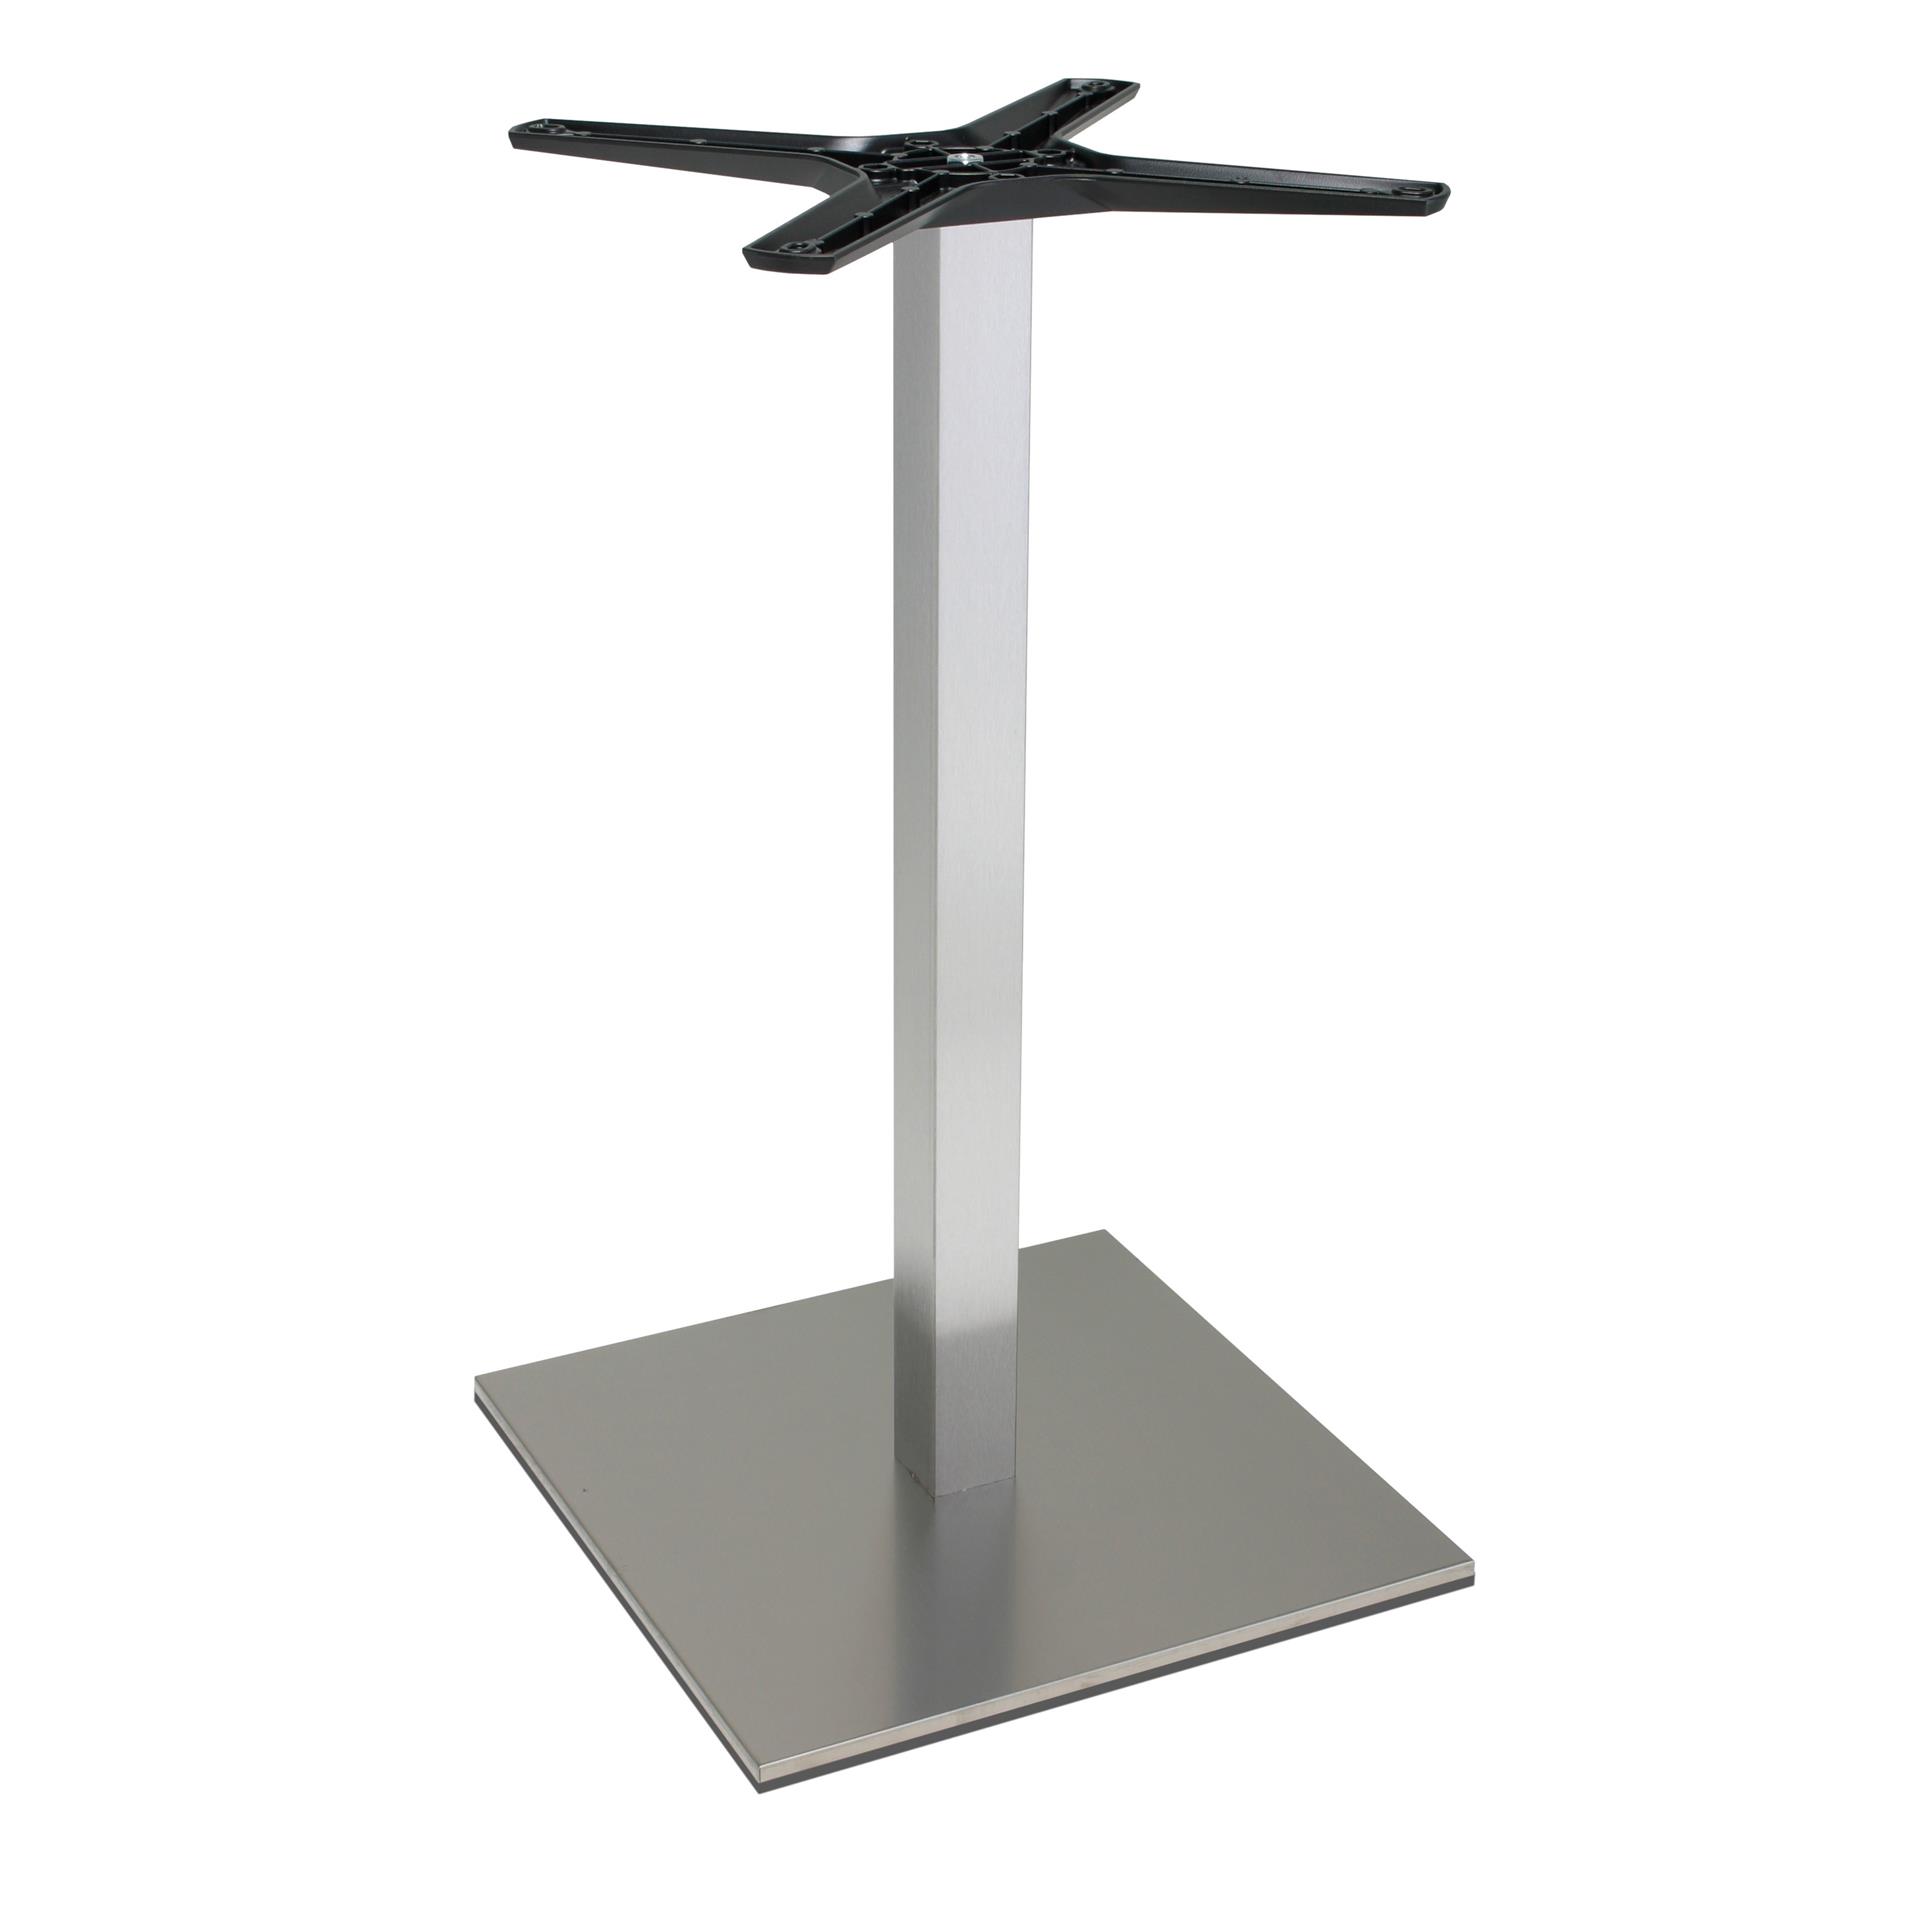 Tischgestell Edelstahl P500inox - rostfrei - satiniert - matt - quadratisch